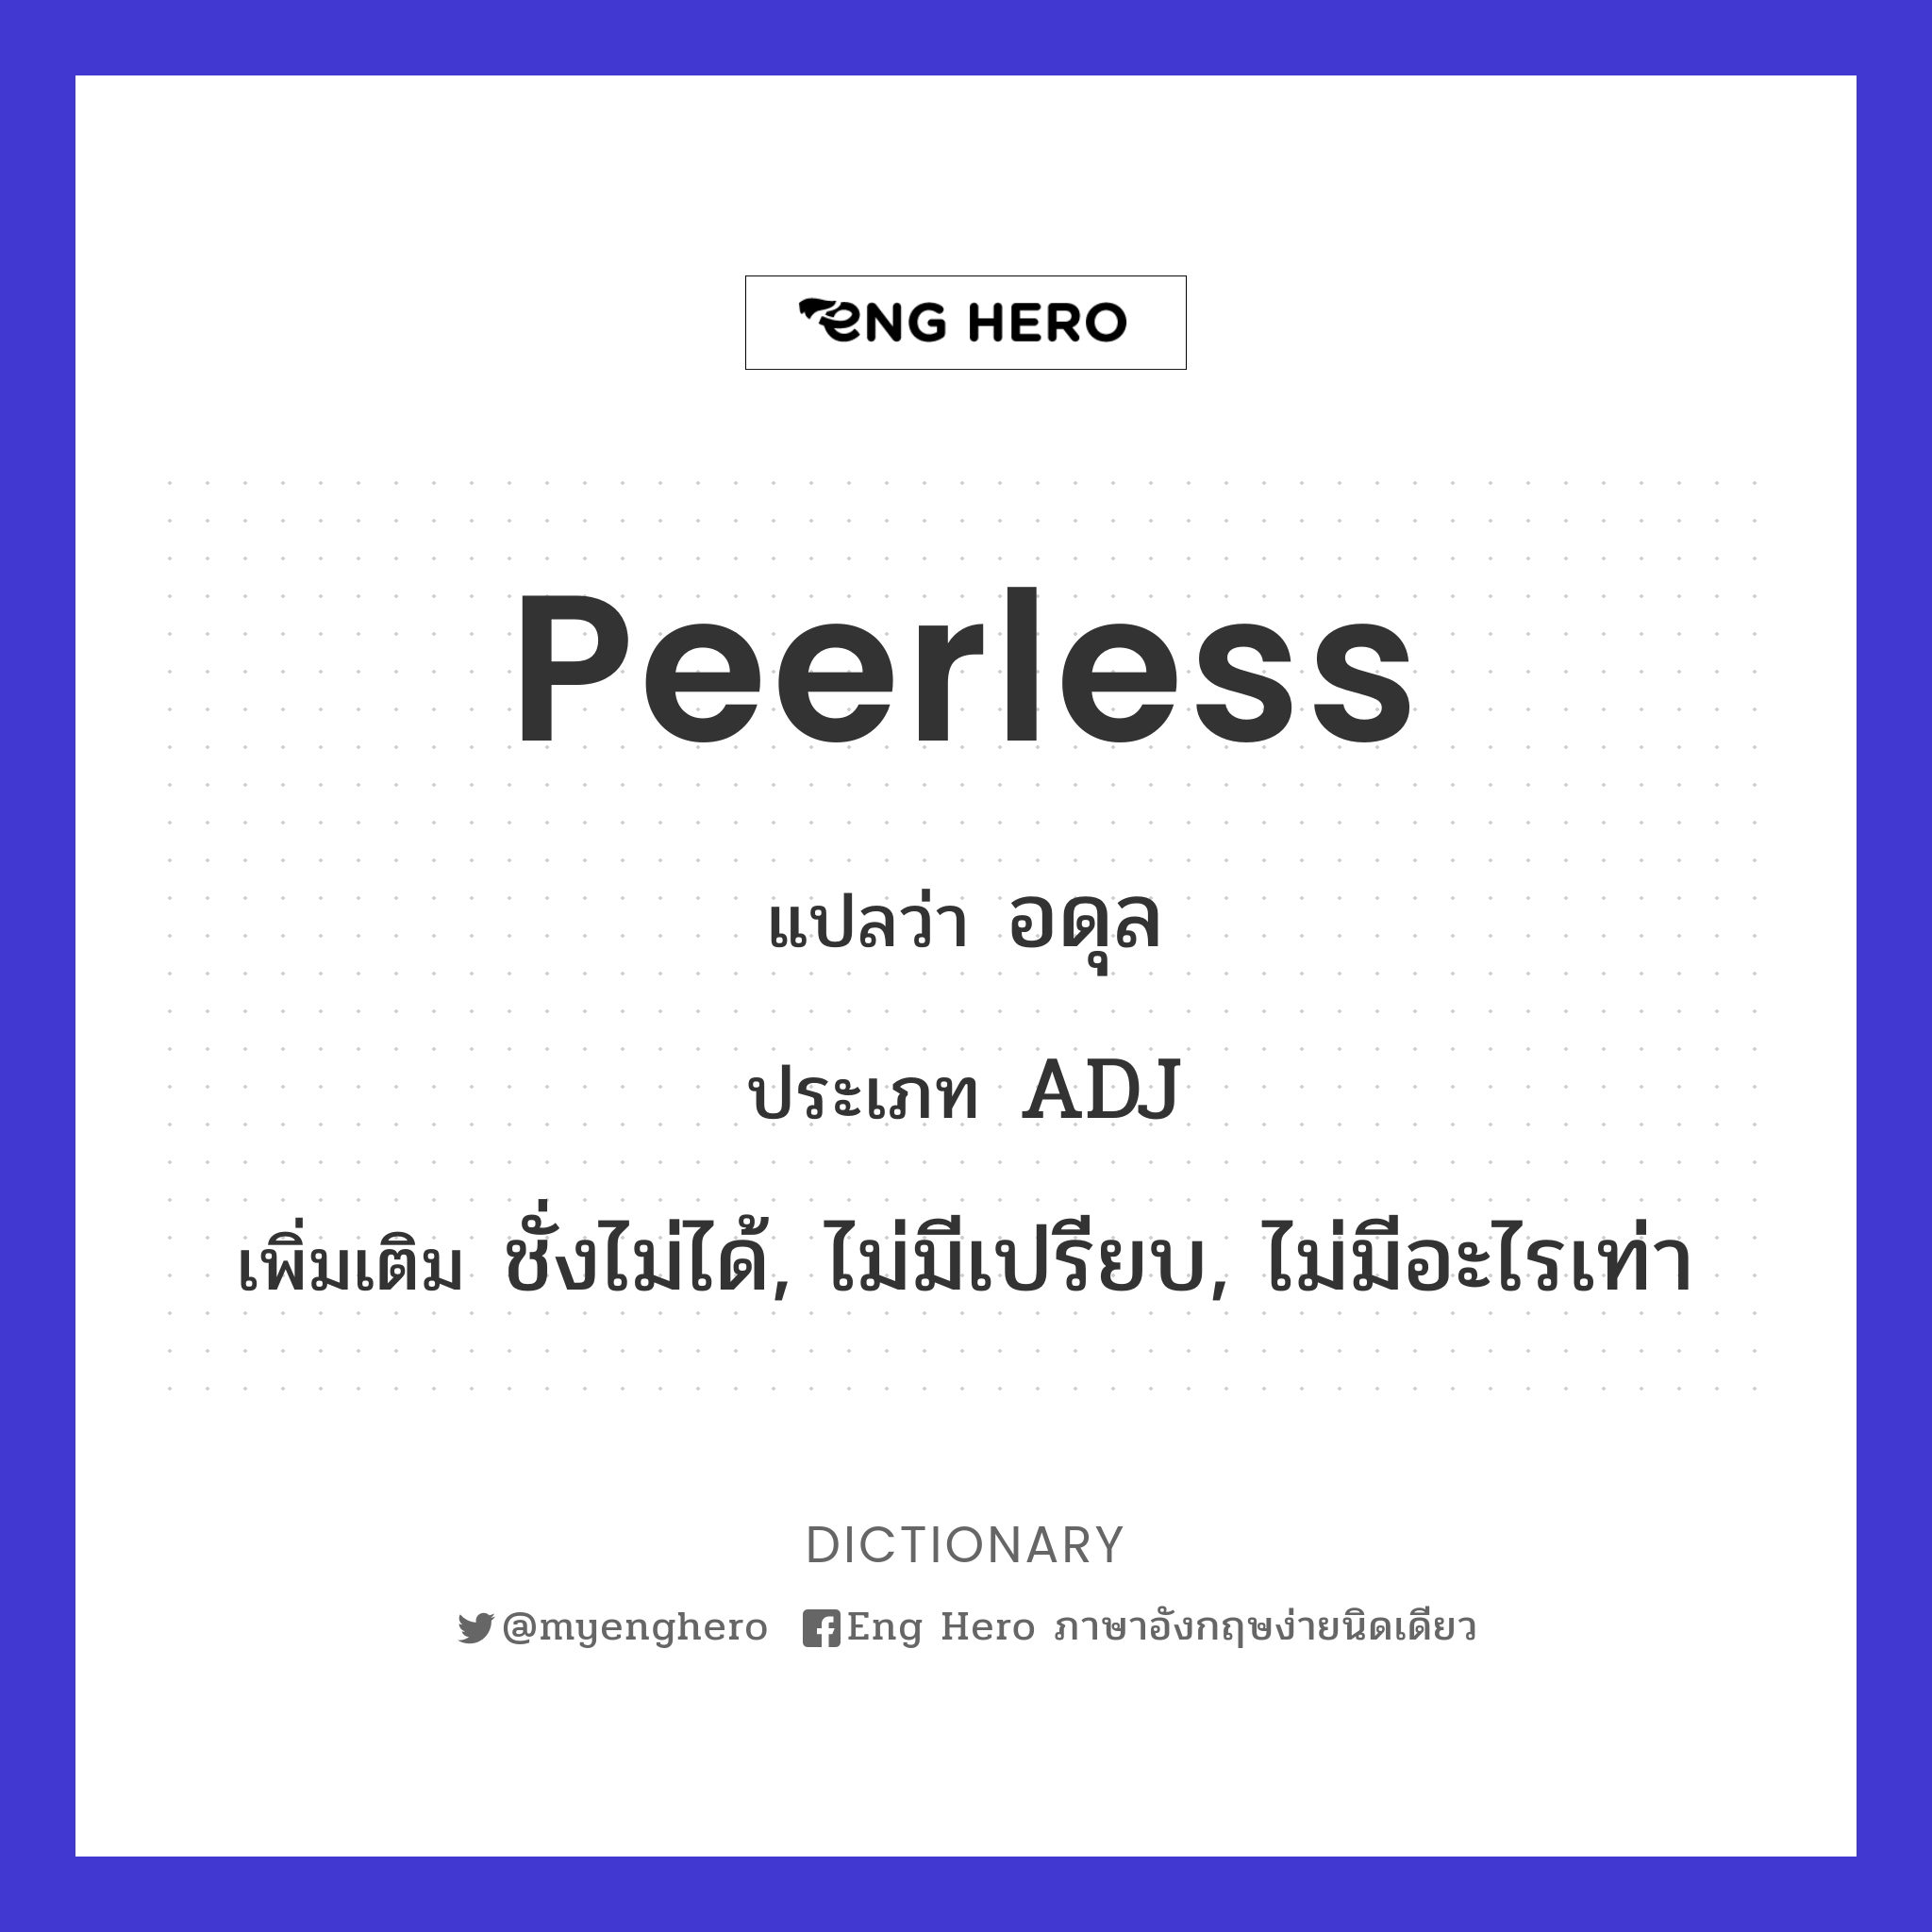 peerless